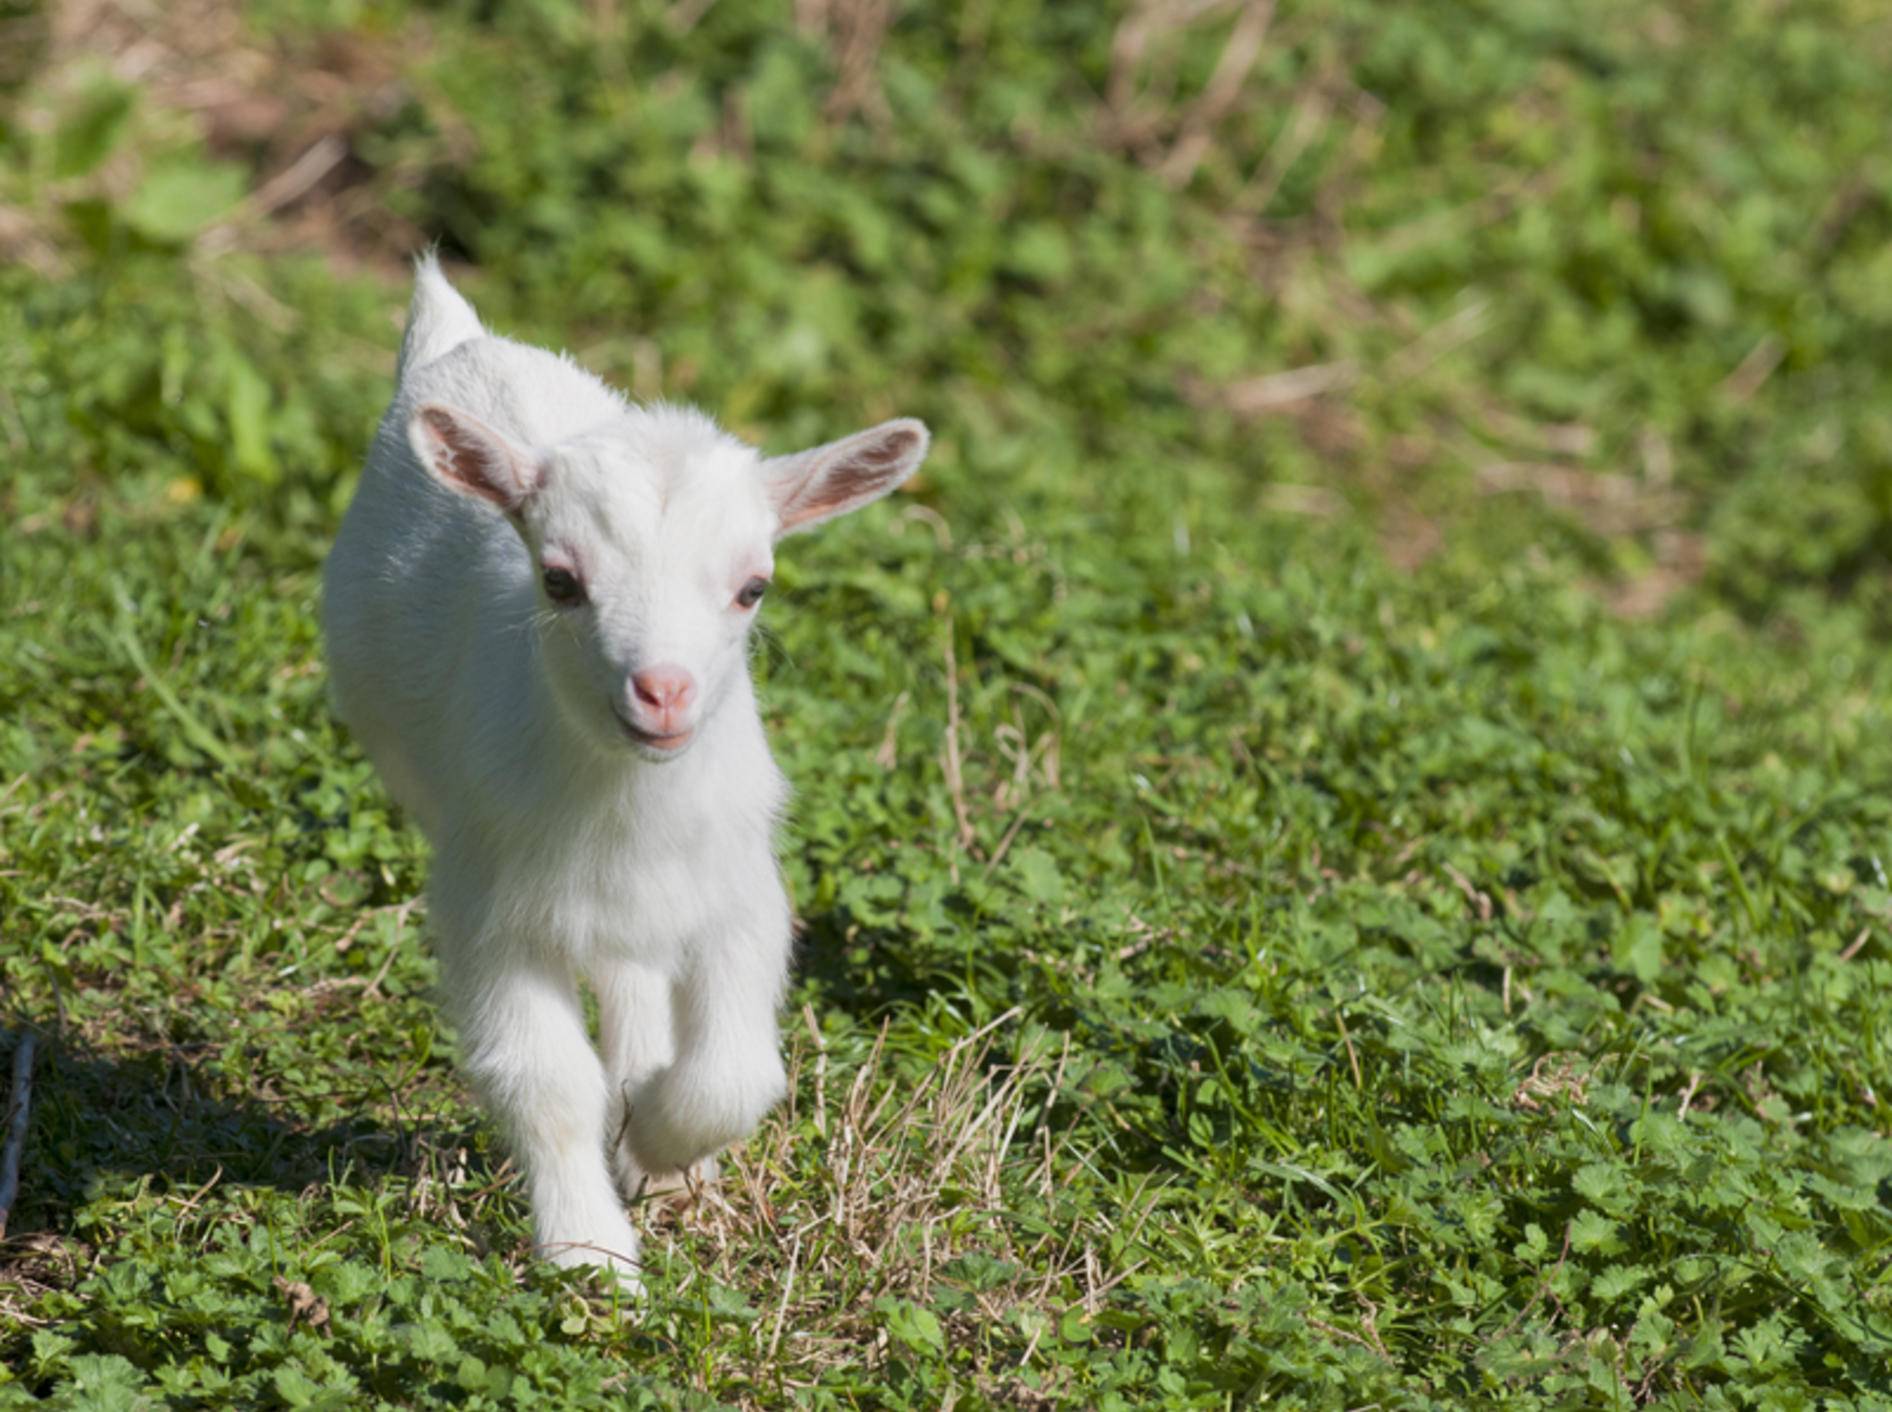 Wohin diese kleine Ziege wohl so eilig auf dem Weg ist? – Bild: Shutterstock / Andrea Izzotti